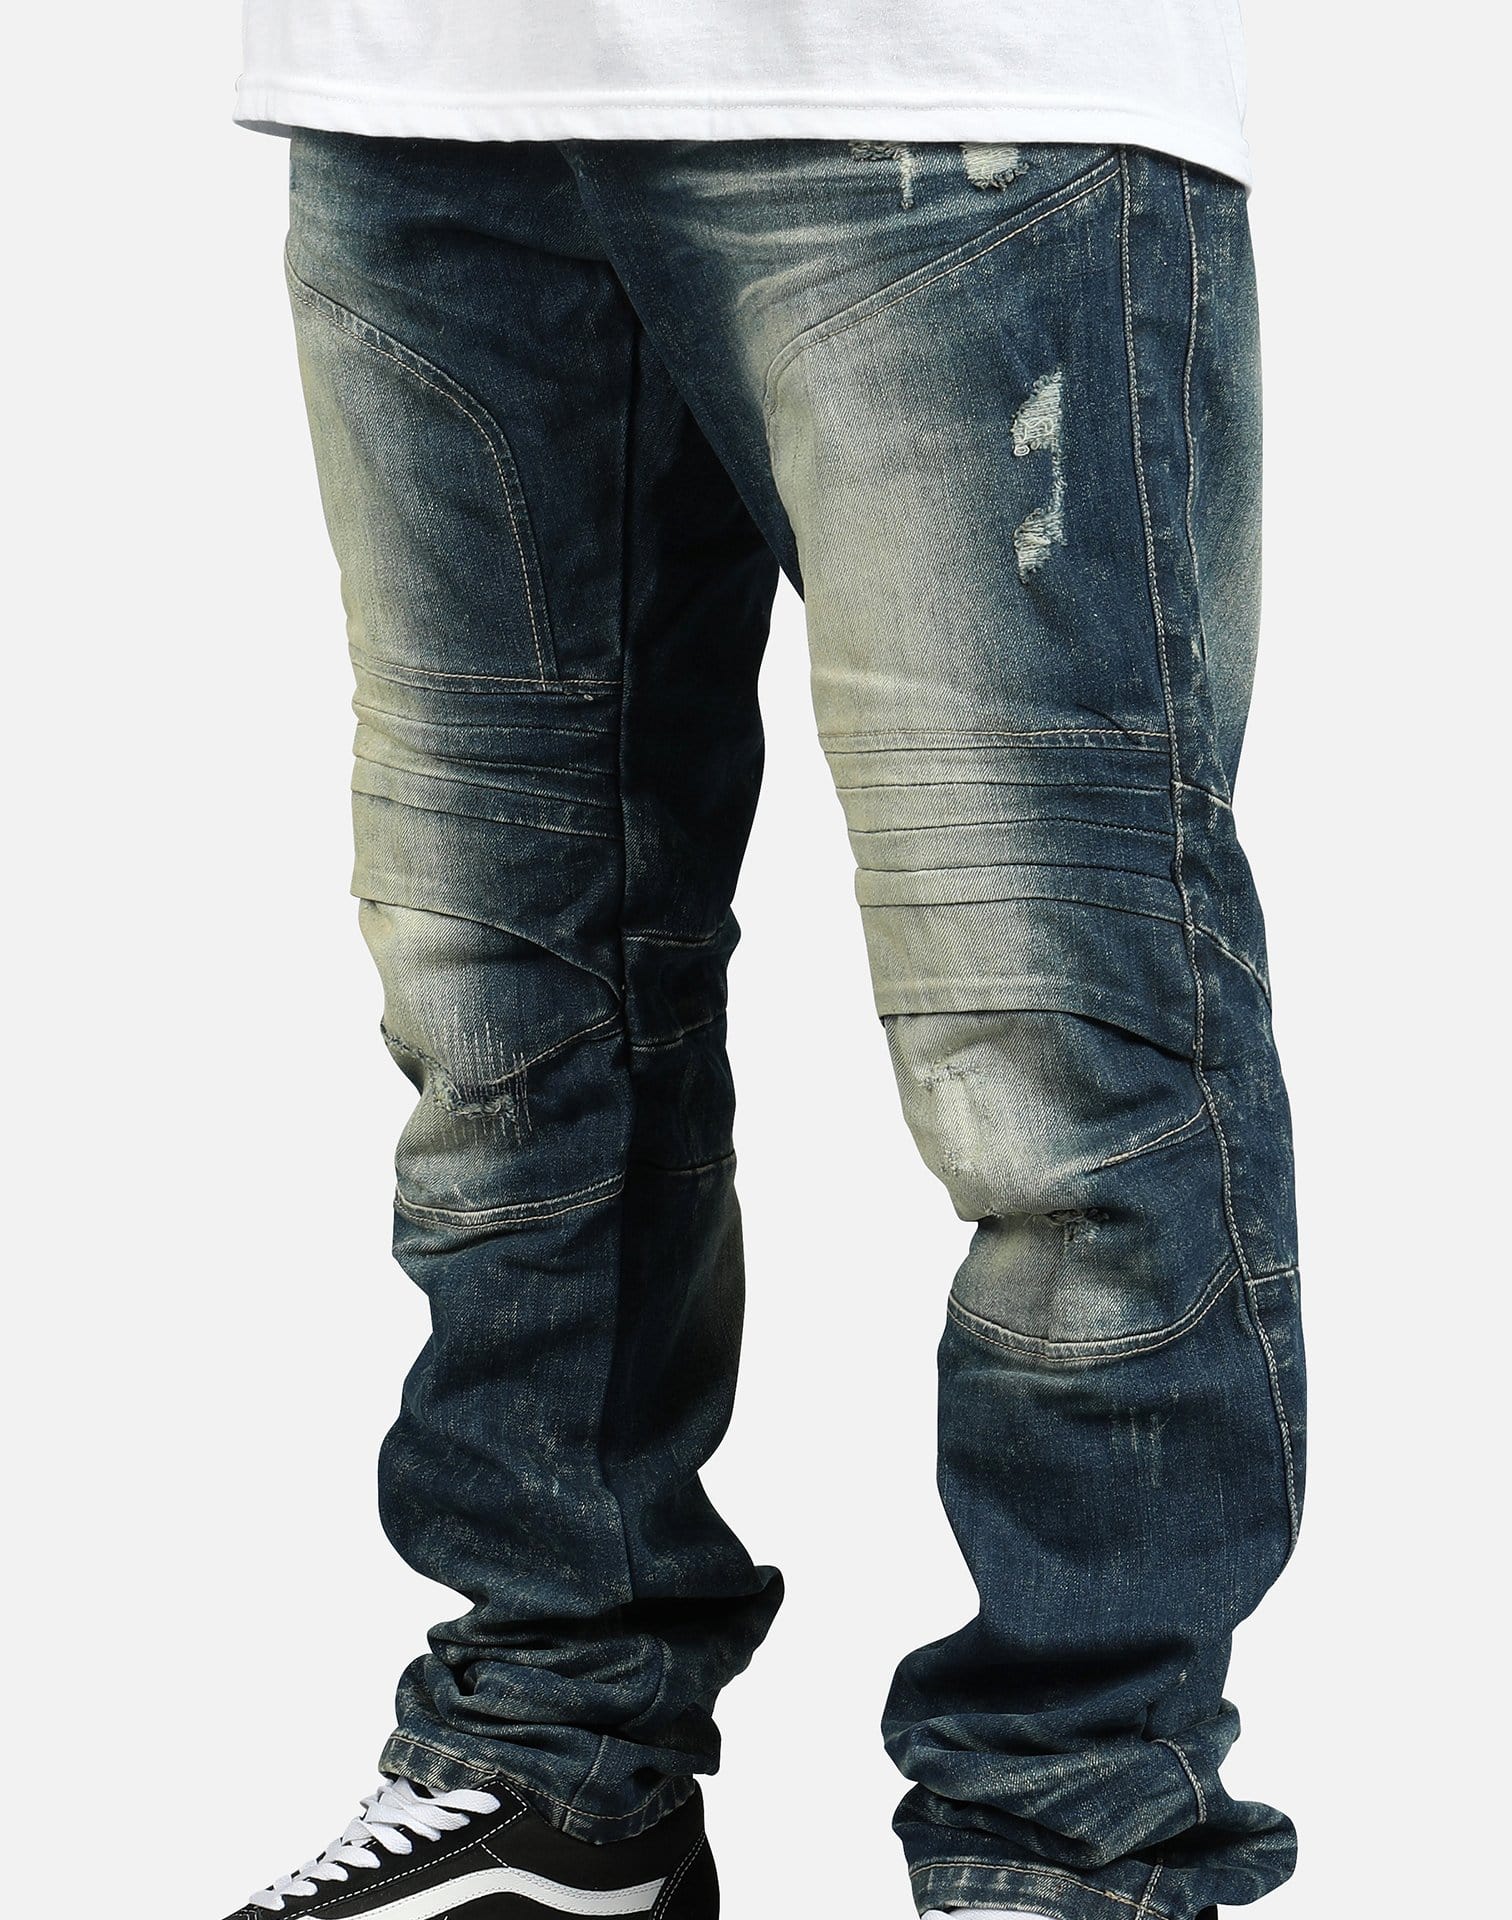 Smoke Rise Men's Fashion Denim Jeans